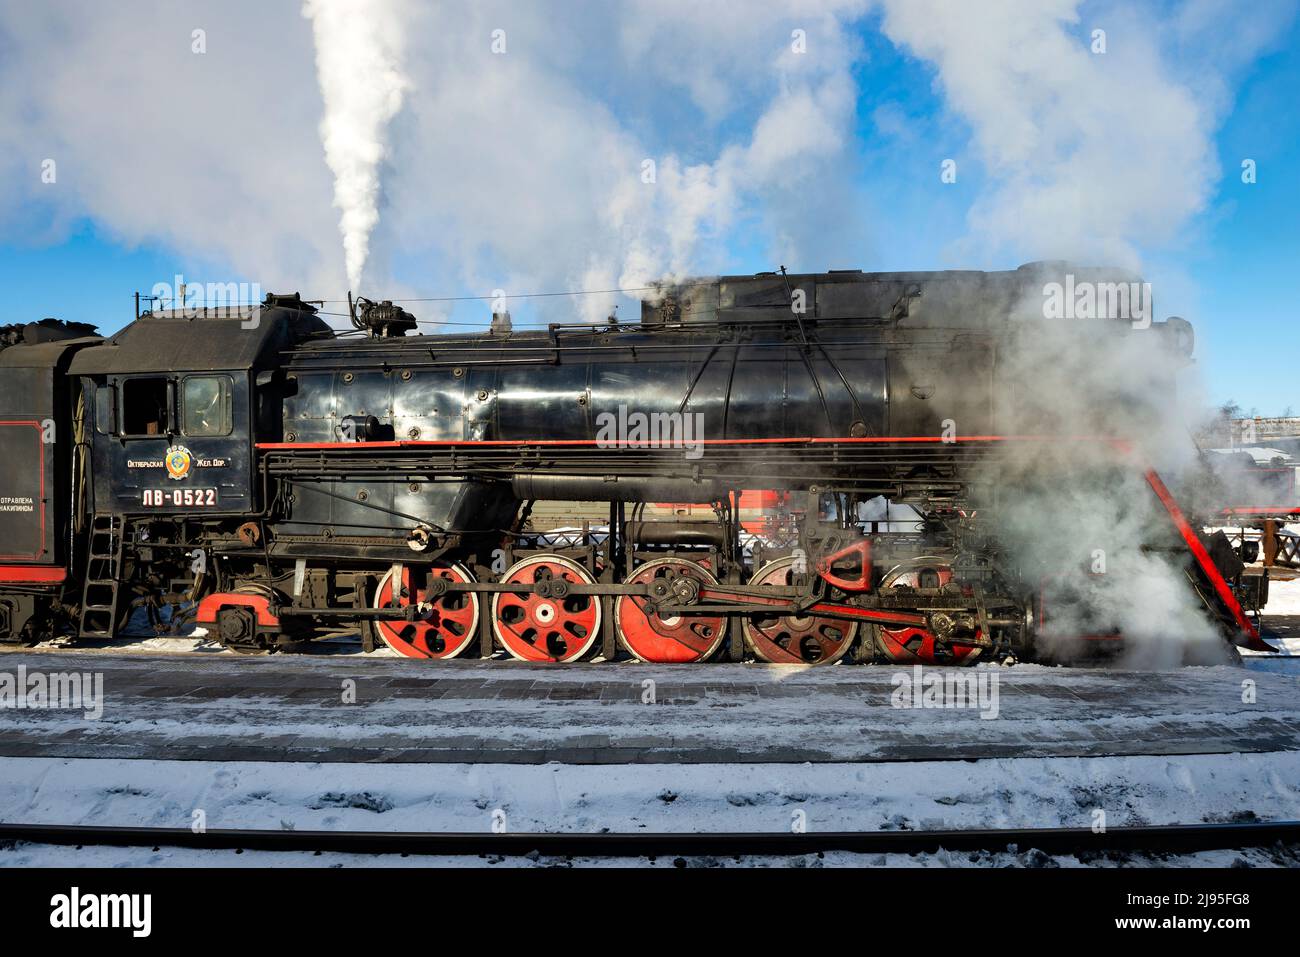 SORTAVALA, RUSSIE - 10 MARS 2021 : ancienne locomotive à vapeur soviétique de la série 'LV' en souffles de vapeur le jour ensoleillé de mars Banque D'Images